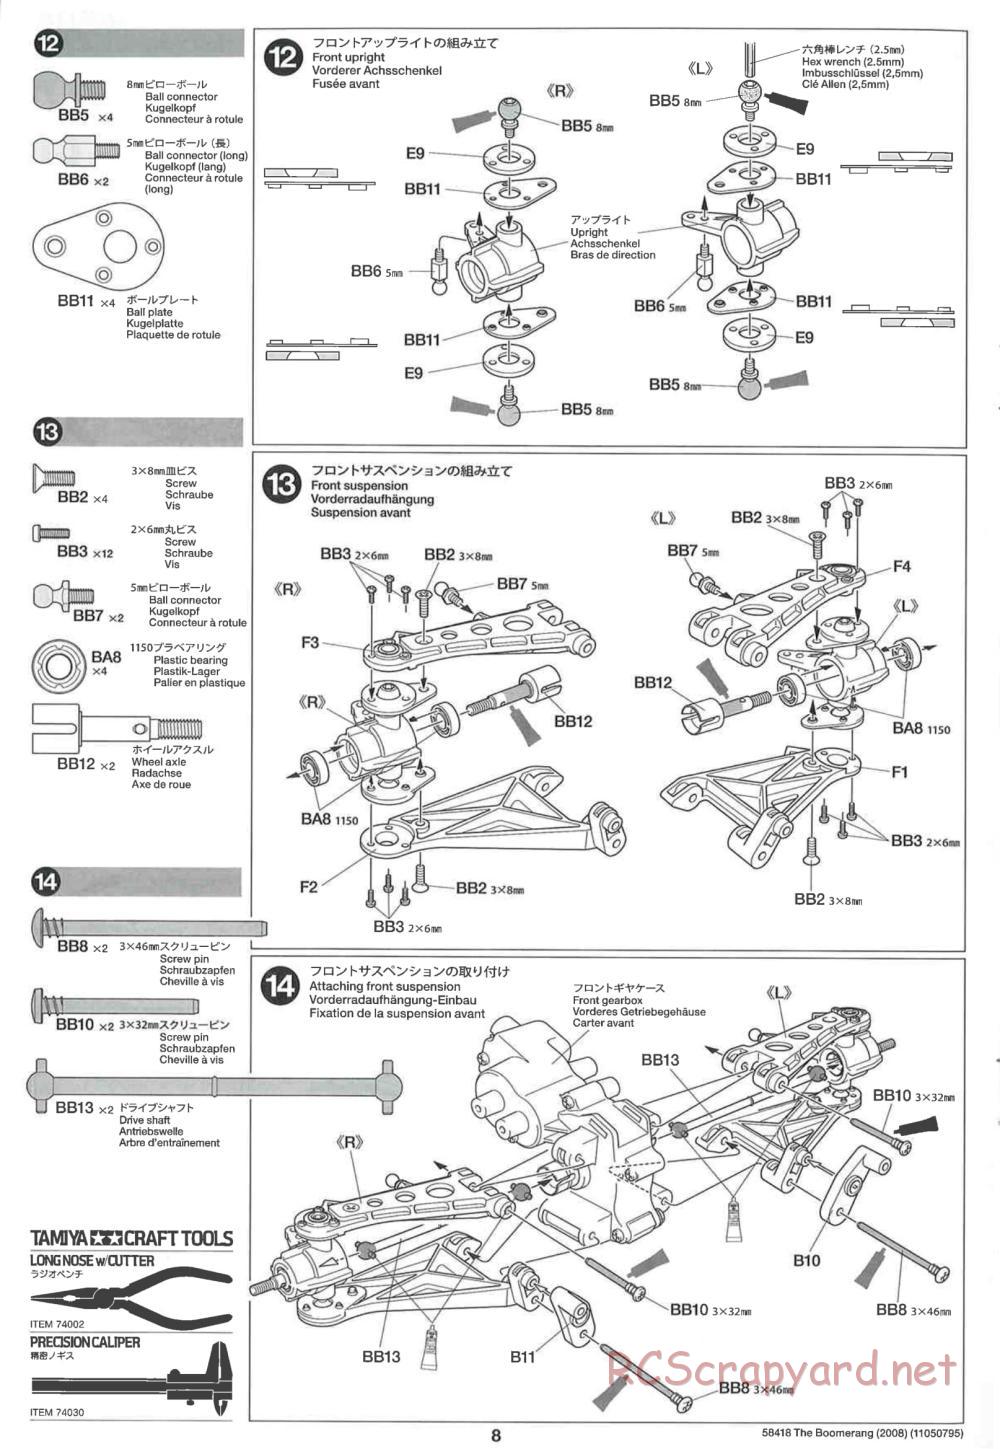 Tamiya - The Boomerang 2008 Chassis - Manual - Page 8